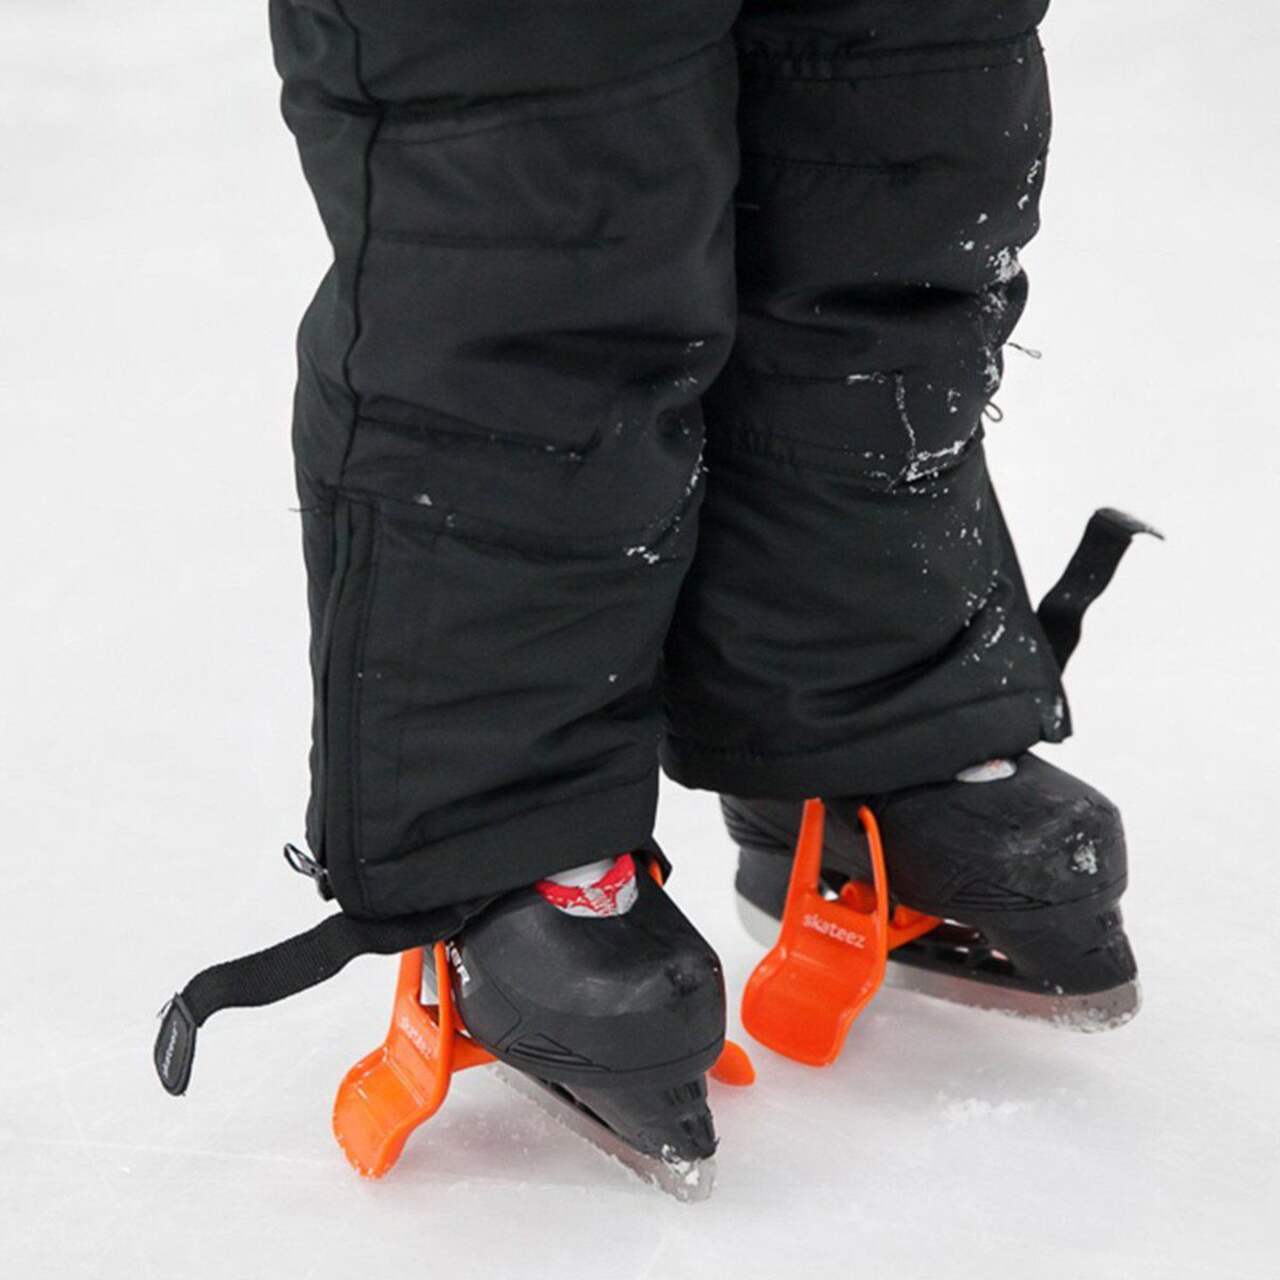 Apprendre le patin à glace à ses enfants